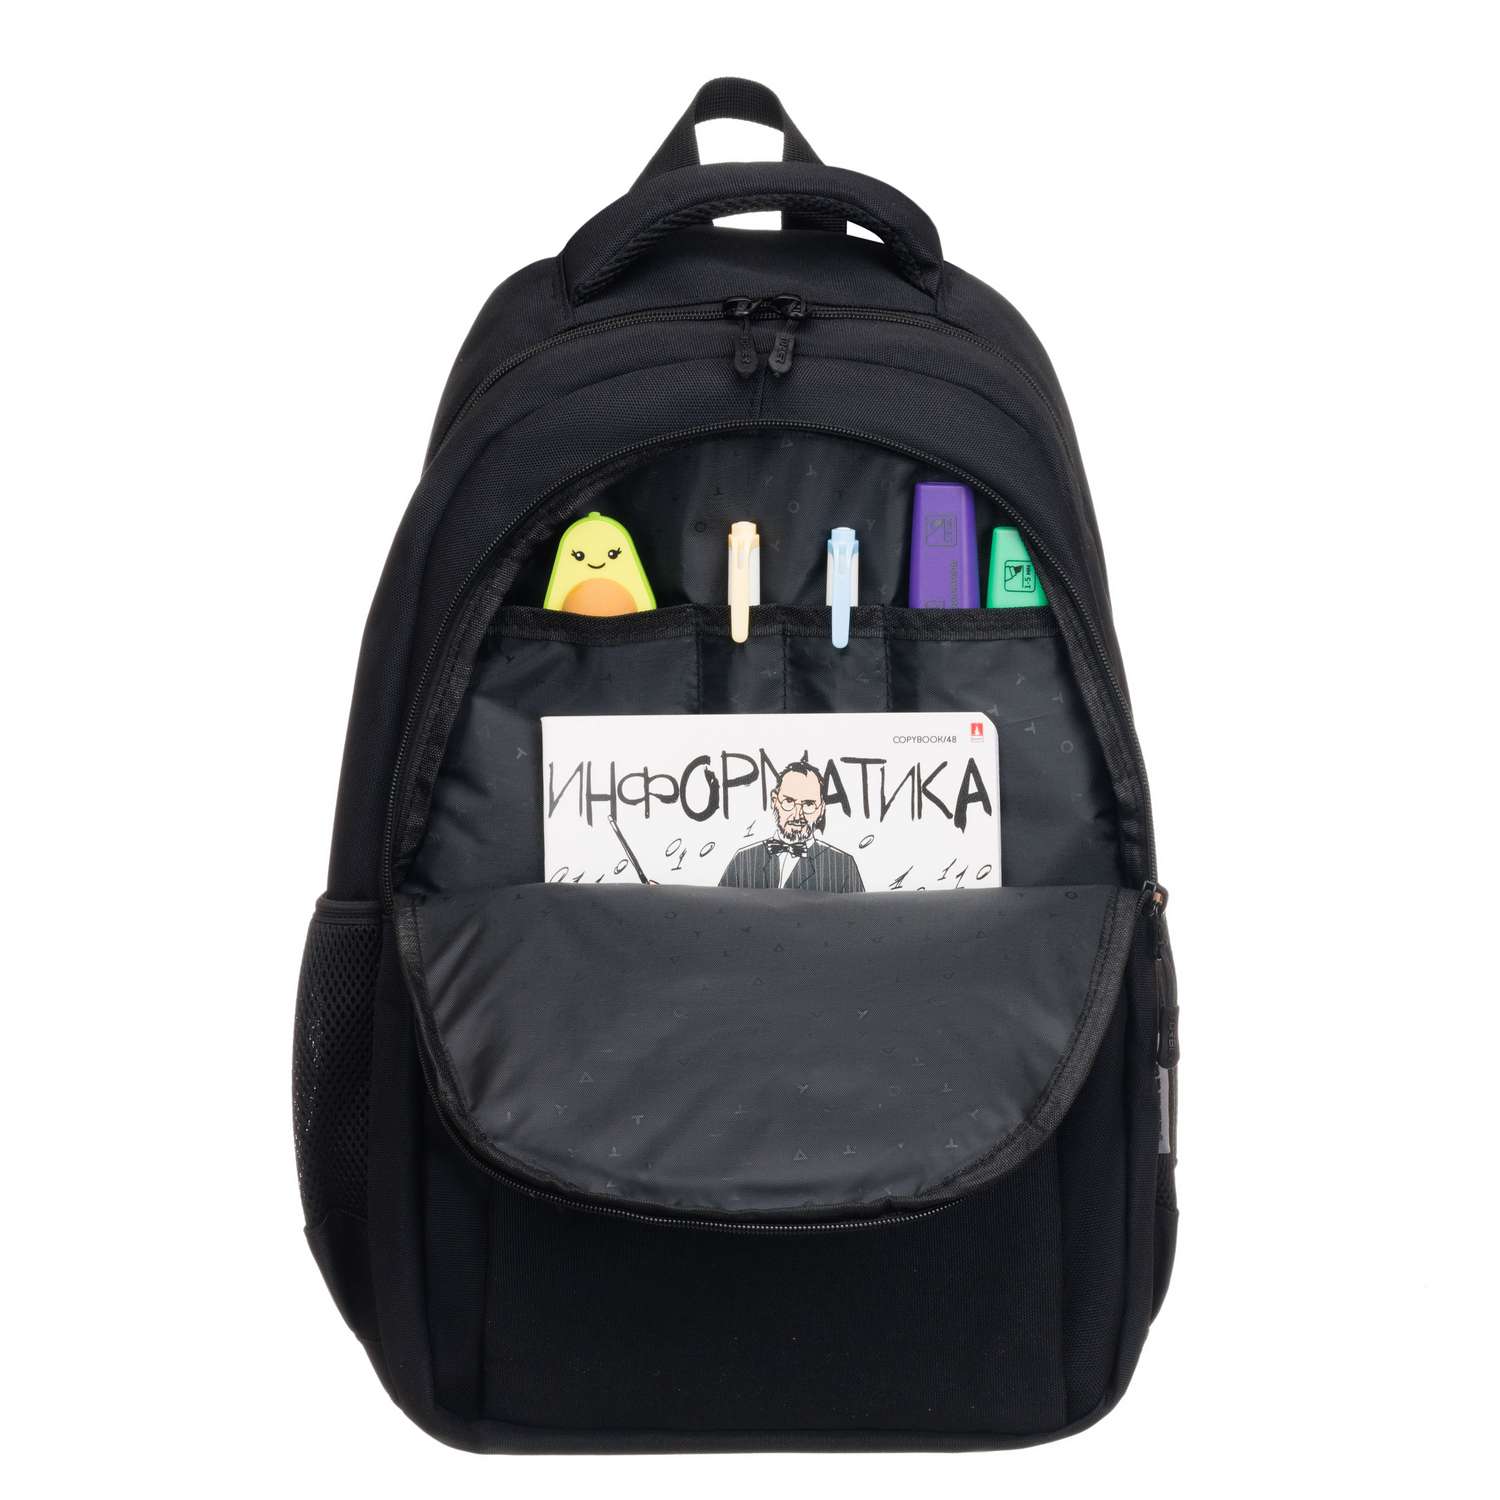 Рюкзак TORBER CLASS X черный и мешок для сменной обуви - фото 5